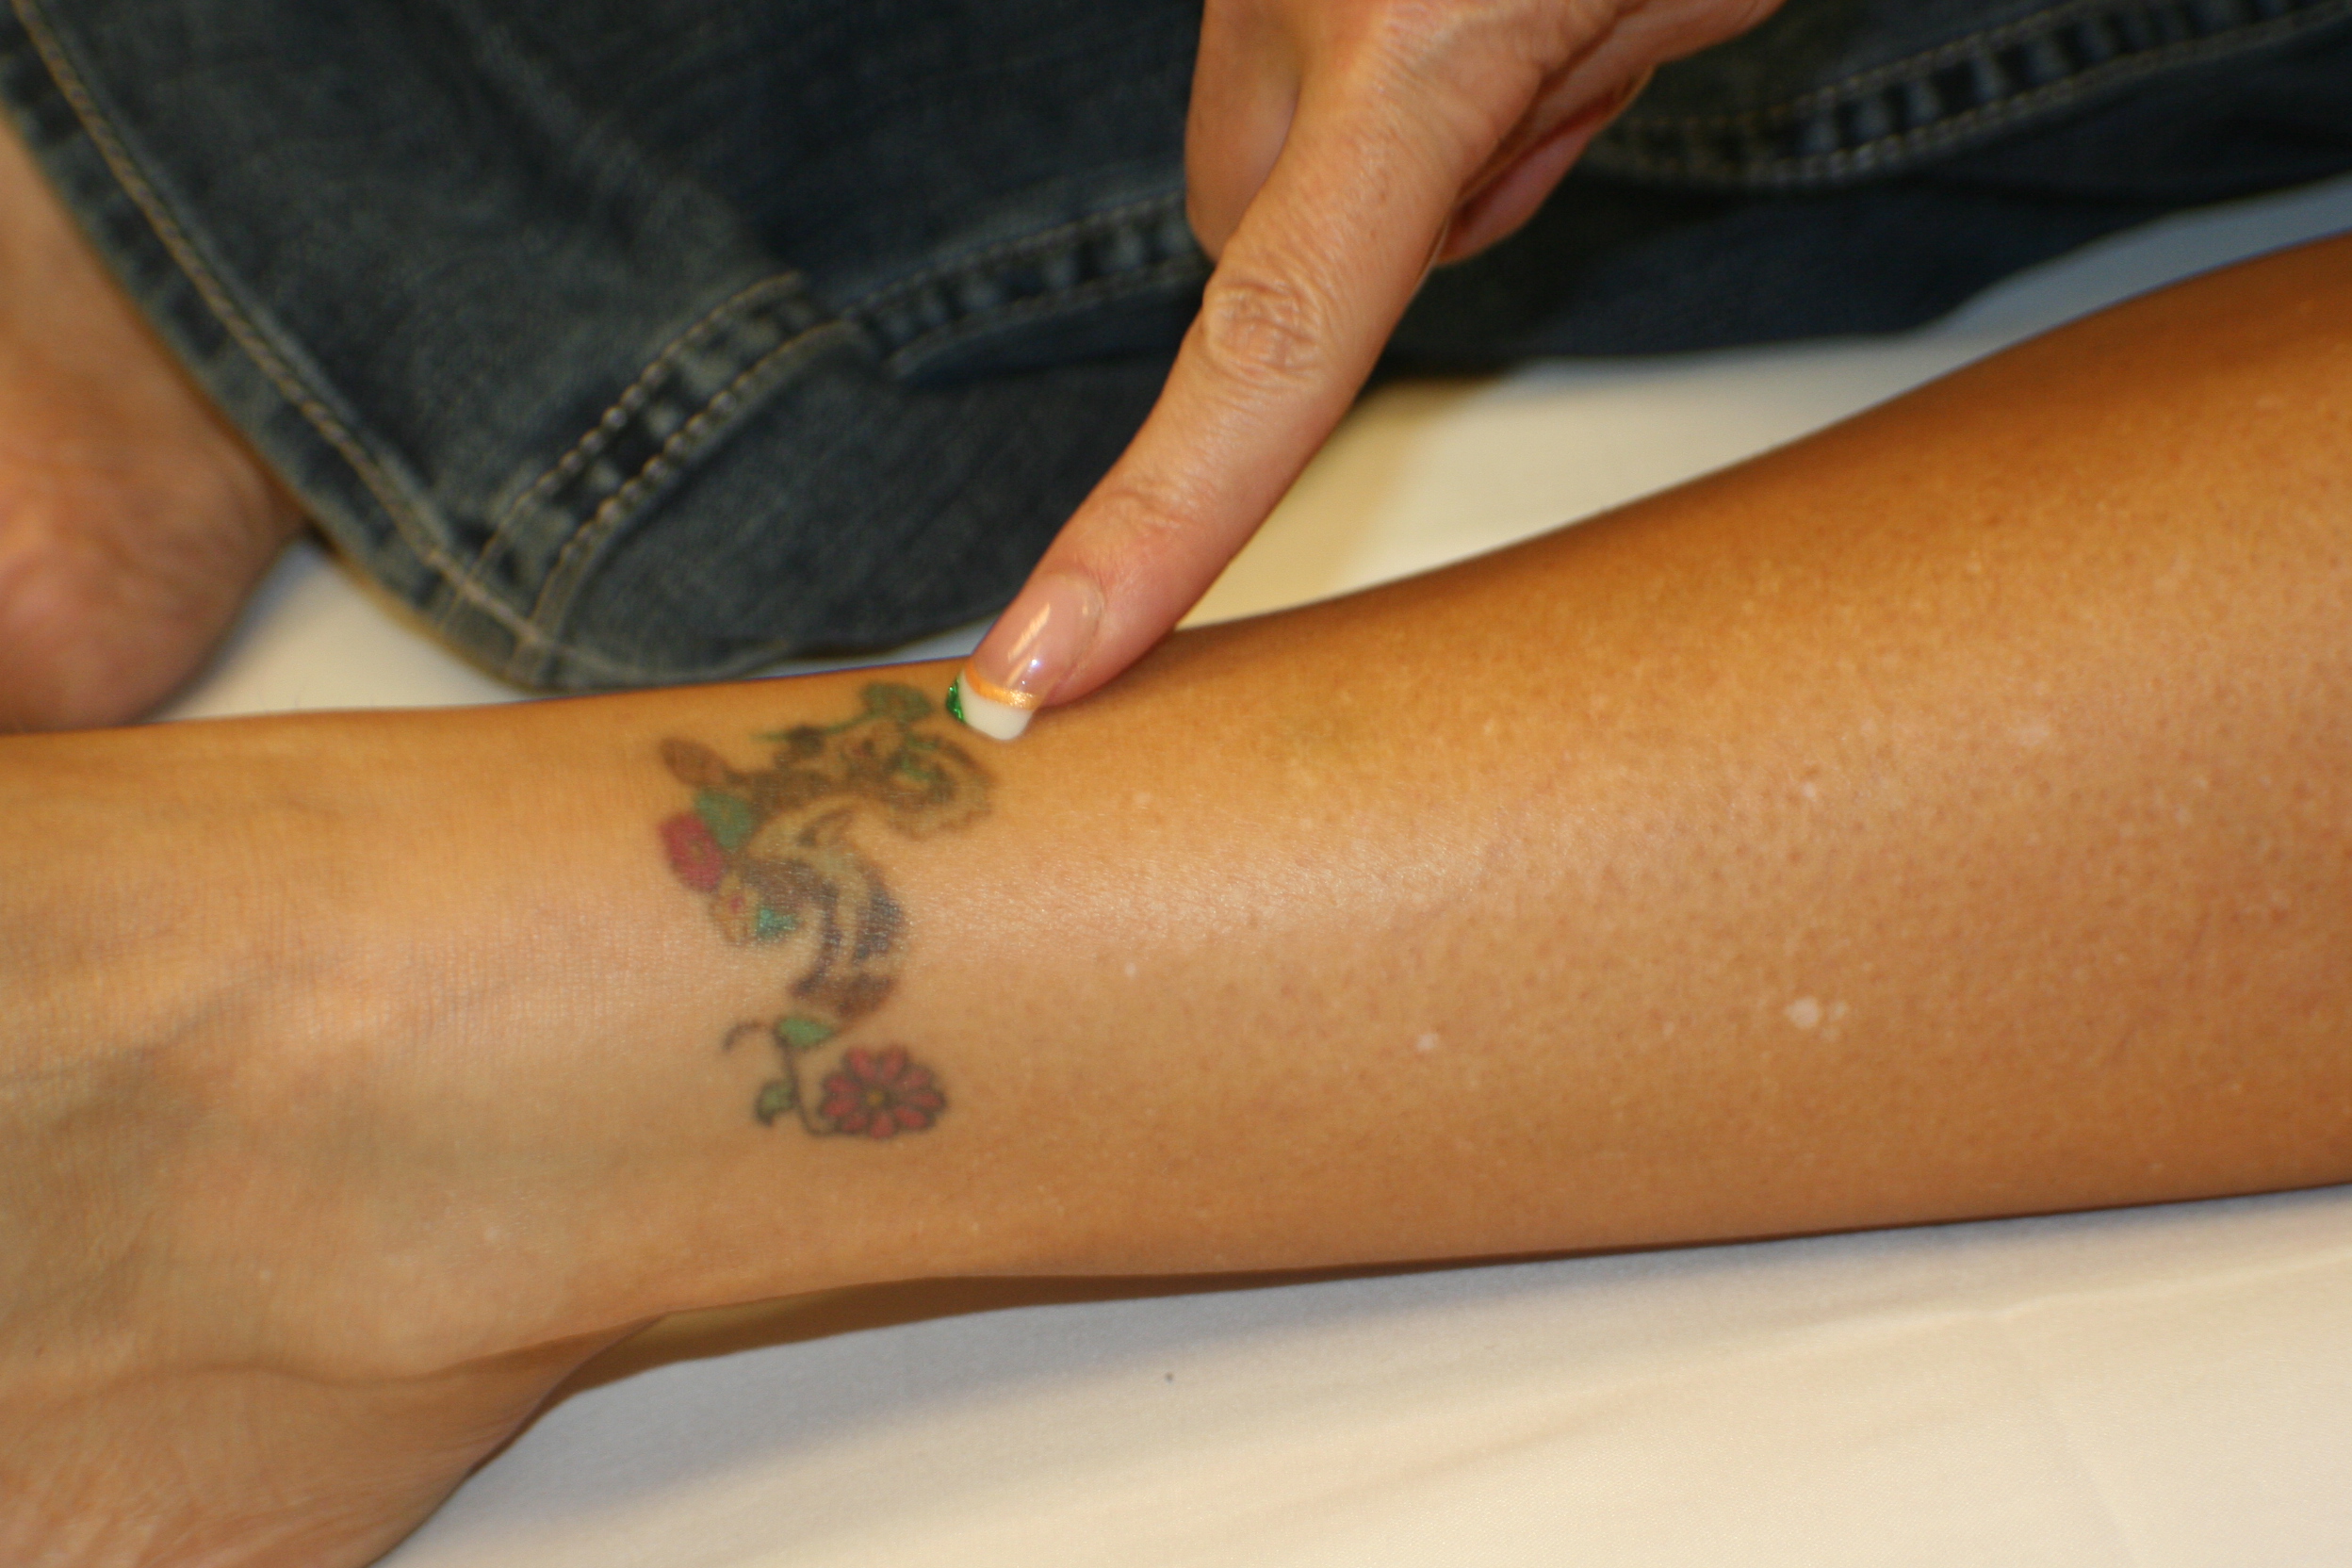 ... 1664 jpeg 1525kB, Tattoo Removal Training | Laser Tattoo Removal | NLI